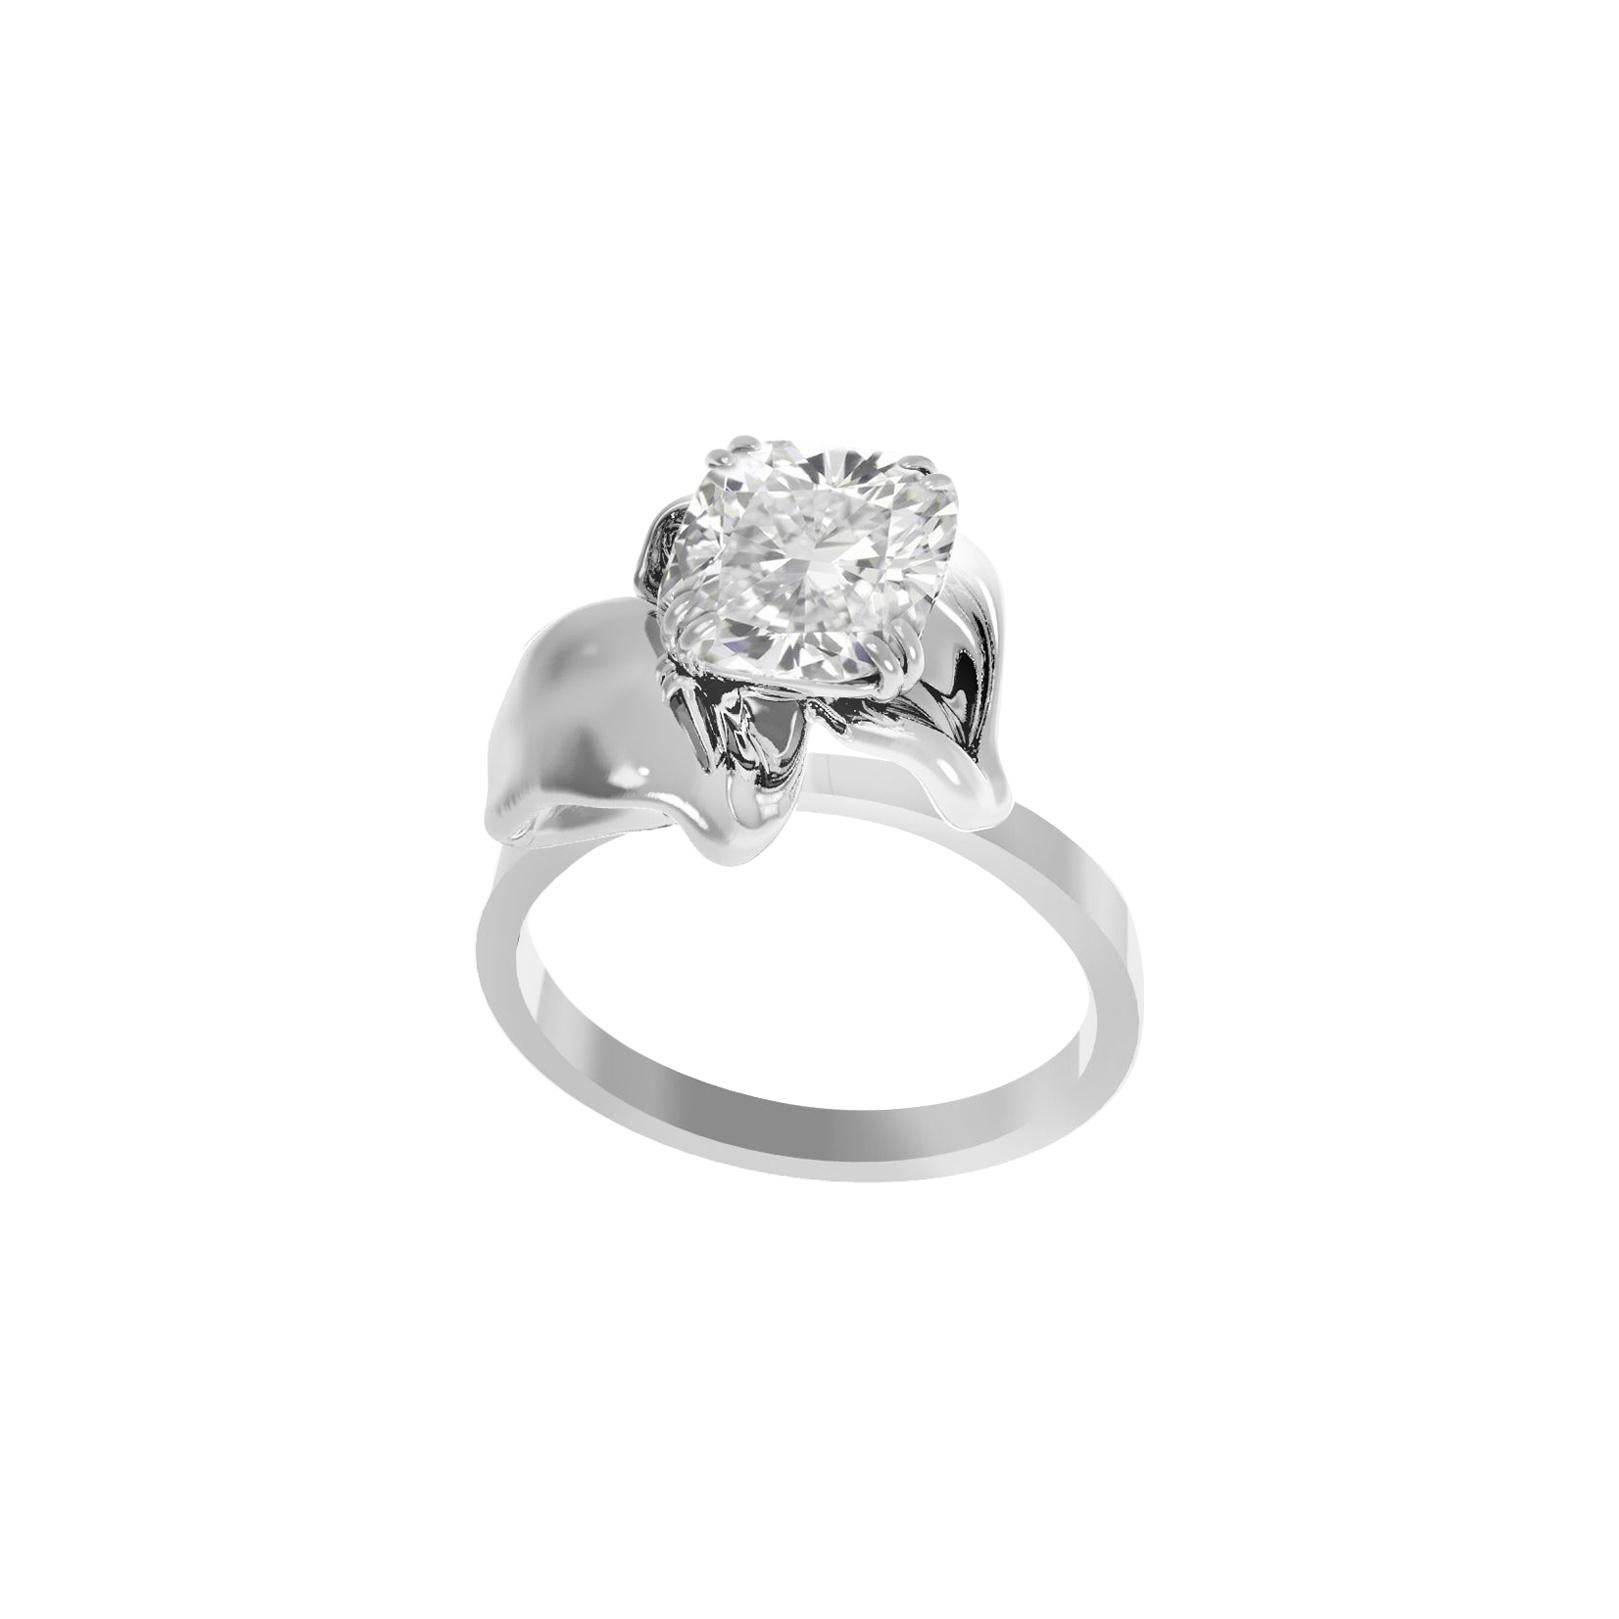 18 Karat White Gold Bridal Ring with GIA Certified 1.01 Carat Diamond 1